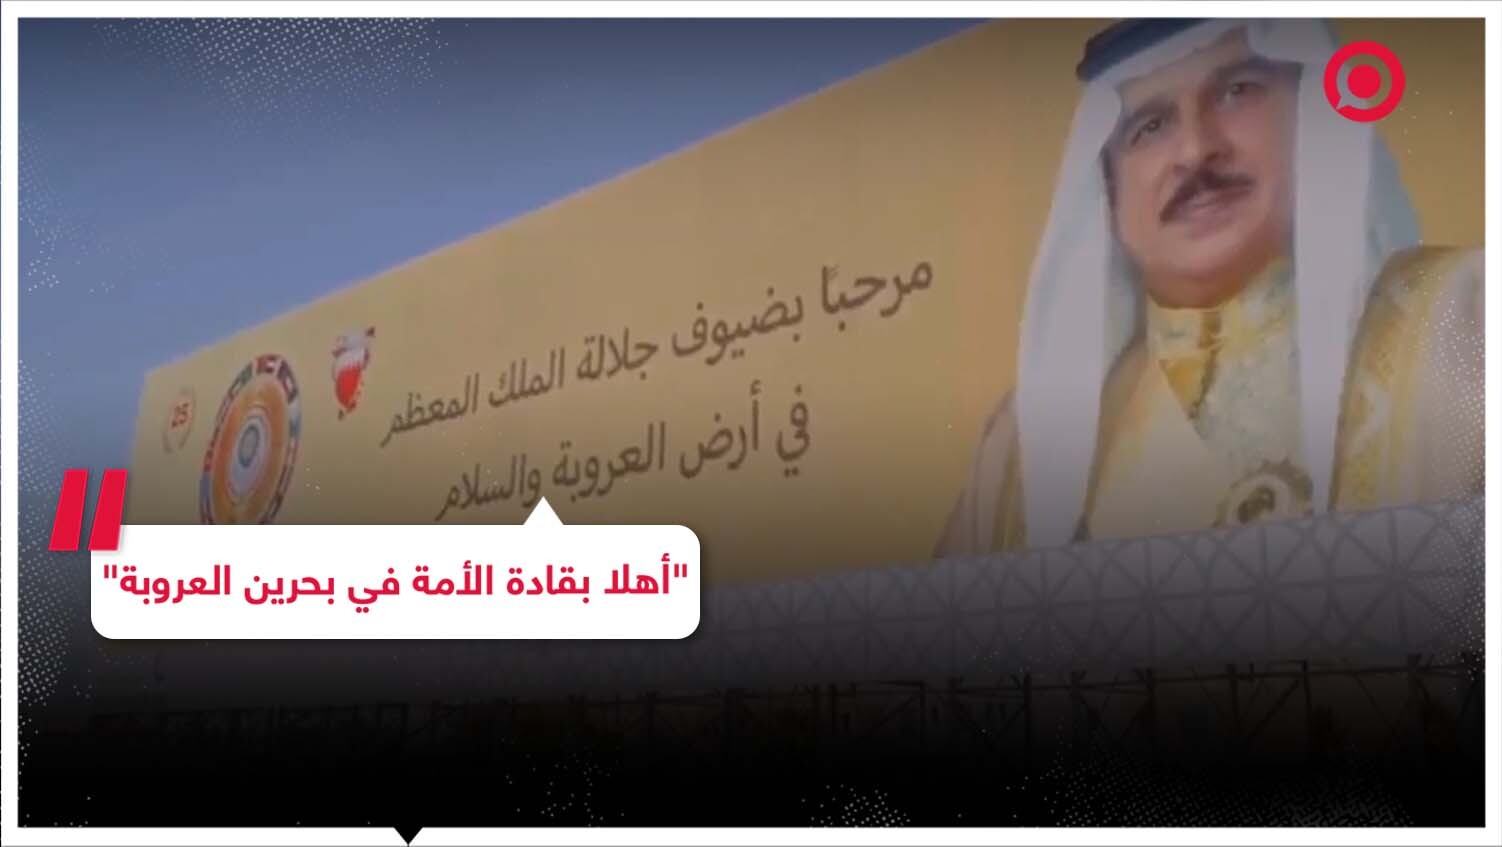 البحرين ترحب بالقادة العرب بطريقة مميزة استعدادا لانعقاد القمة العربية في الأيام المقبلة